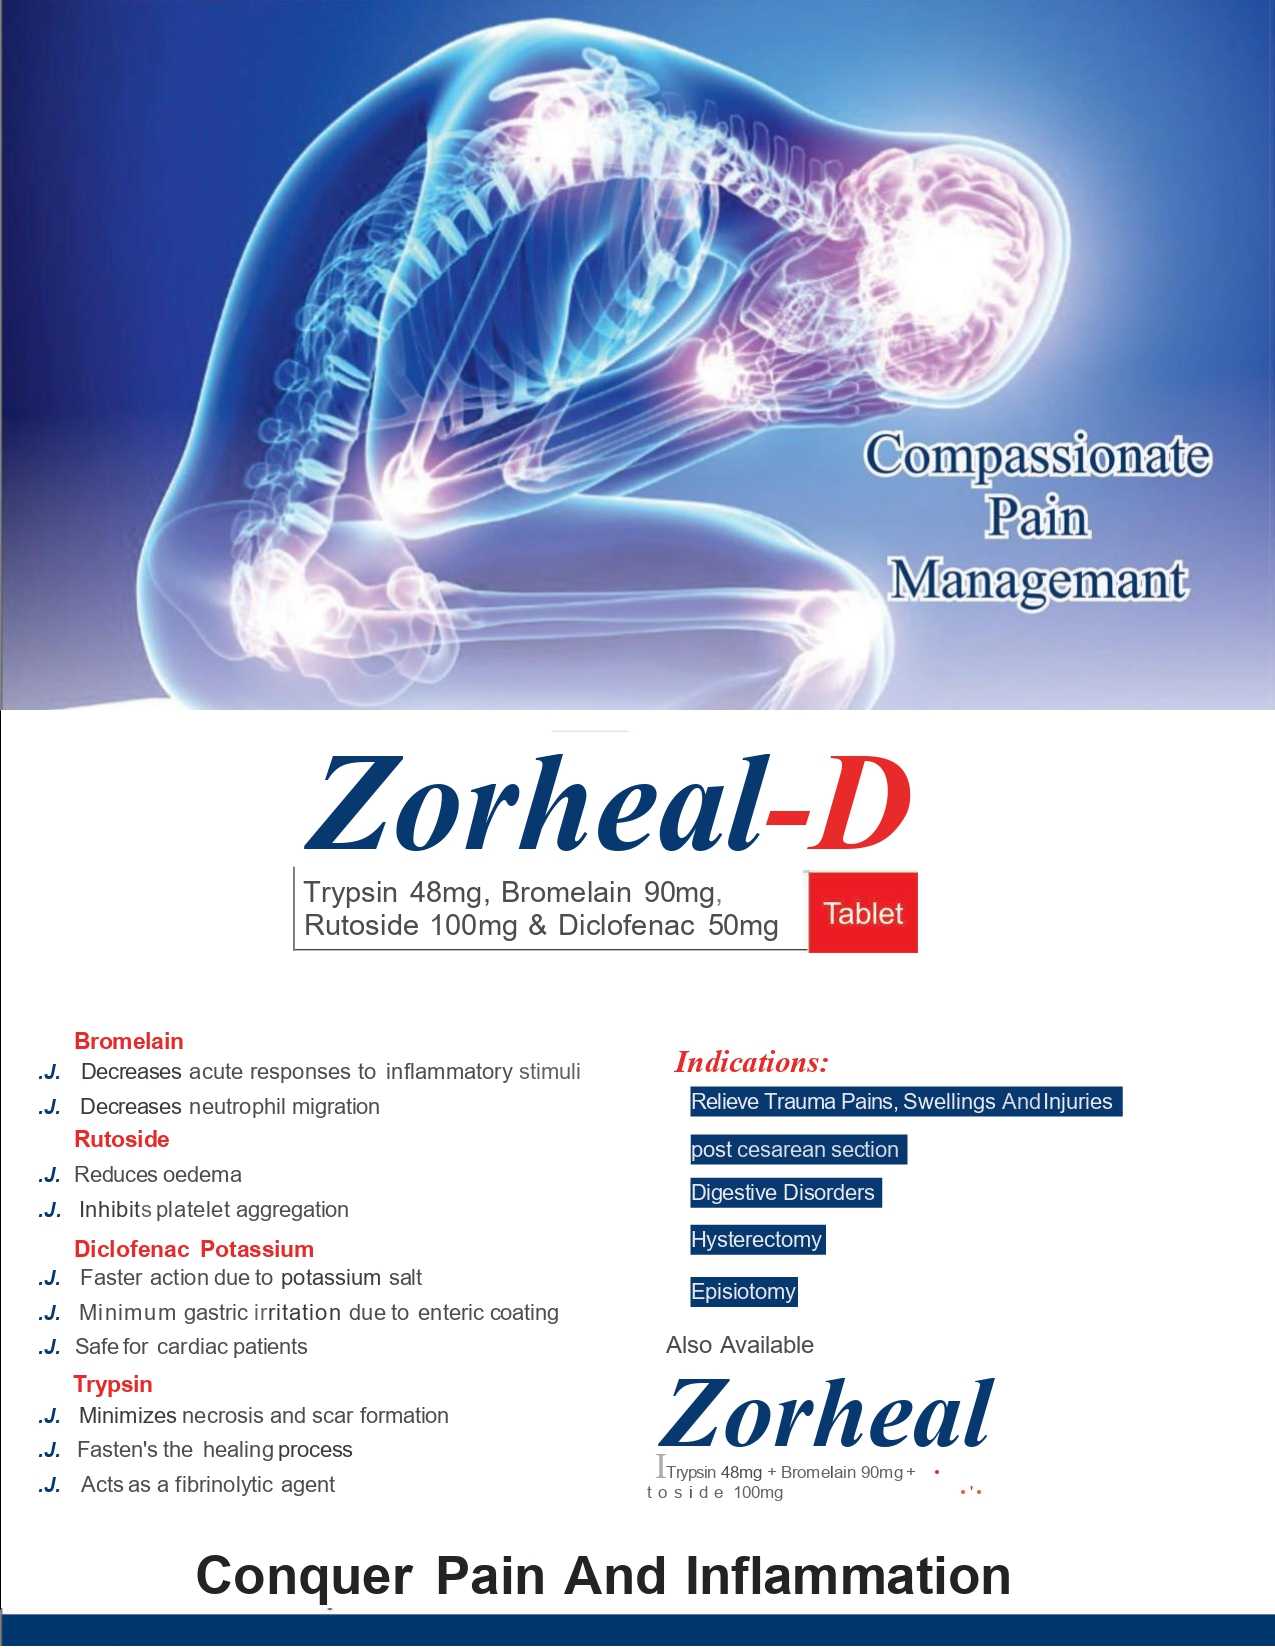 Zorheal-D